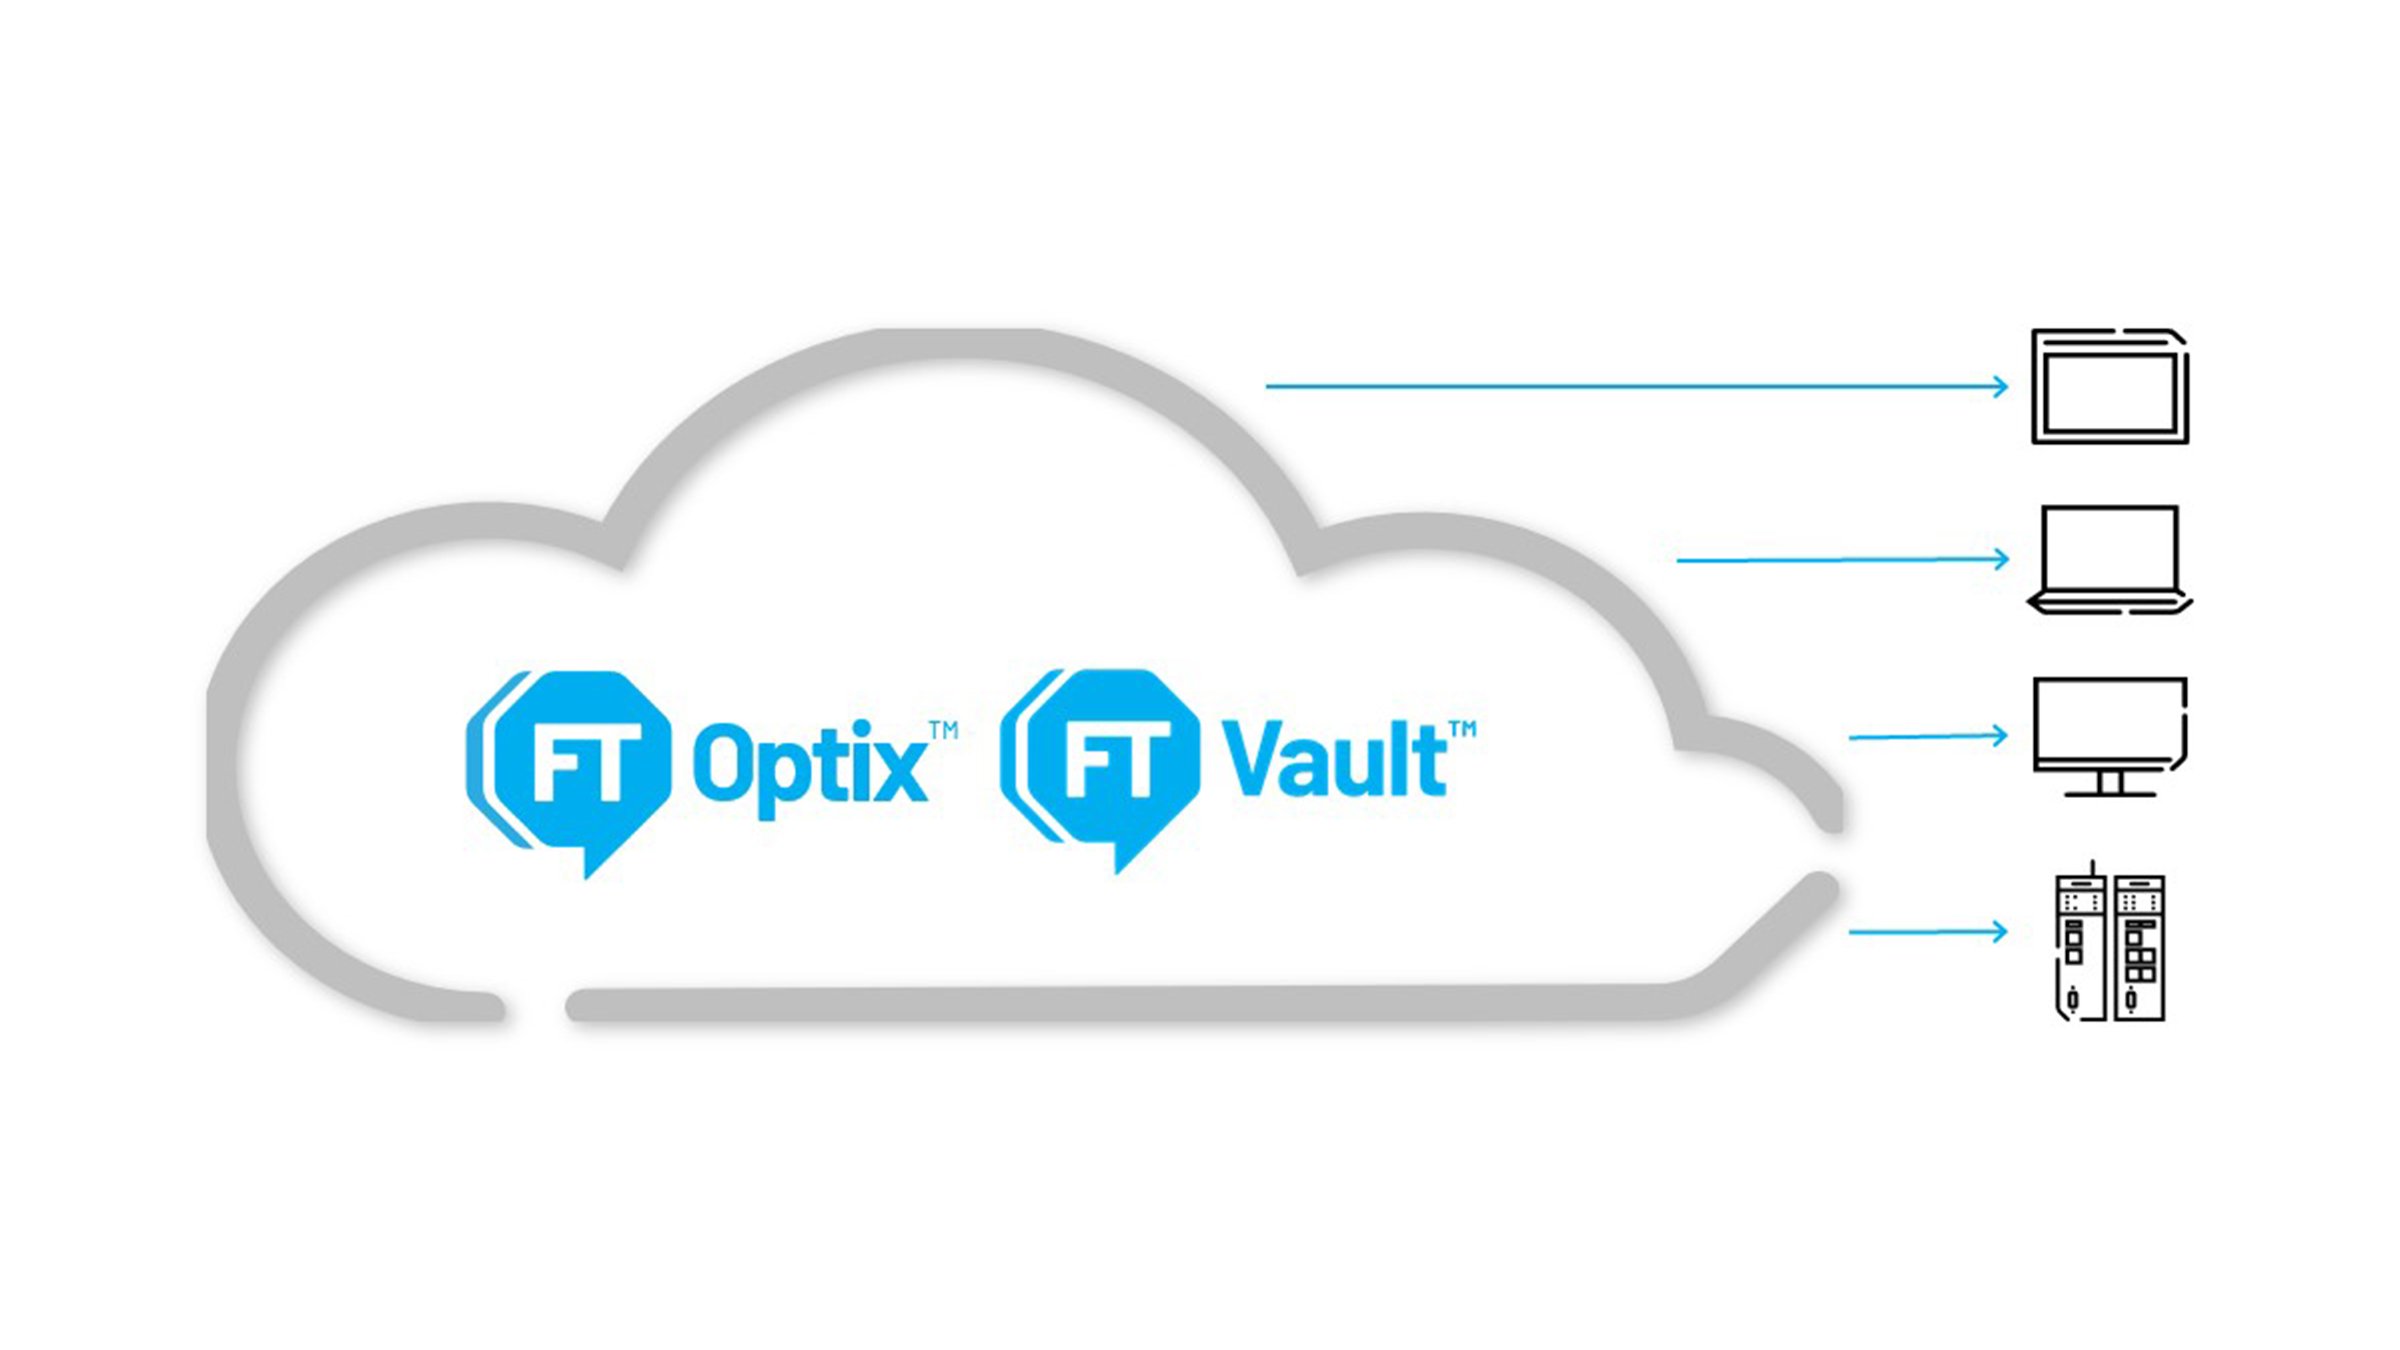 Mejore la colaboración, la capacidad de escalado y la interoperación para lograr su visión de HMI con FactoryTalk Optix y Vault